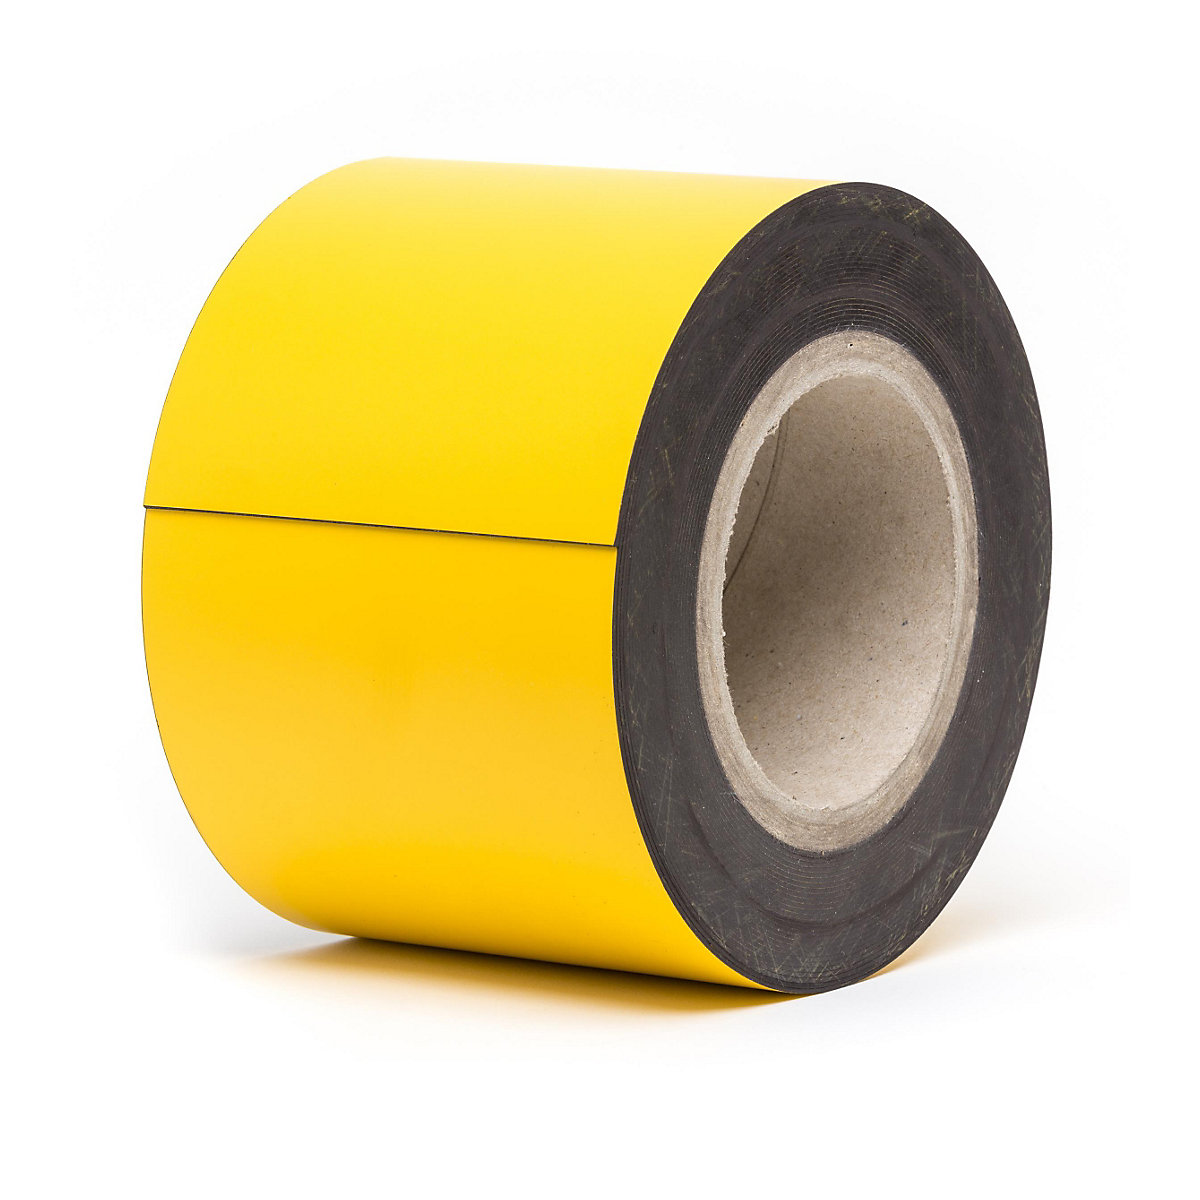 Rótulos magnéticos para almacén, mercancía en rollo, amarillo, altura 100 mm, longitud de rollo 10 m-15